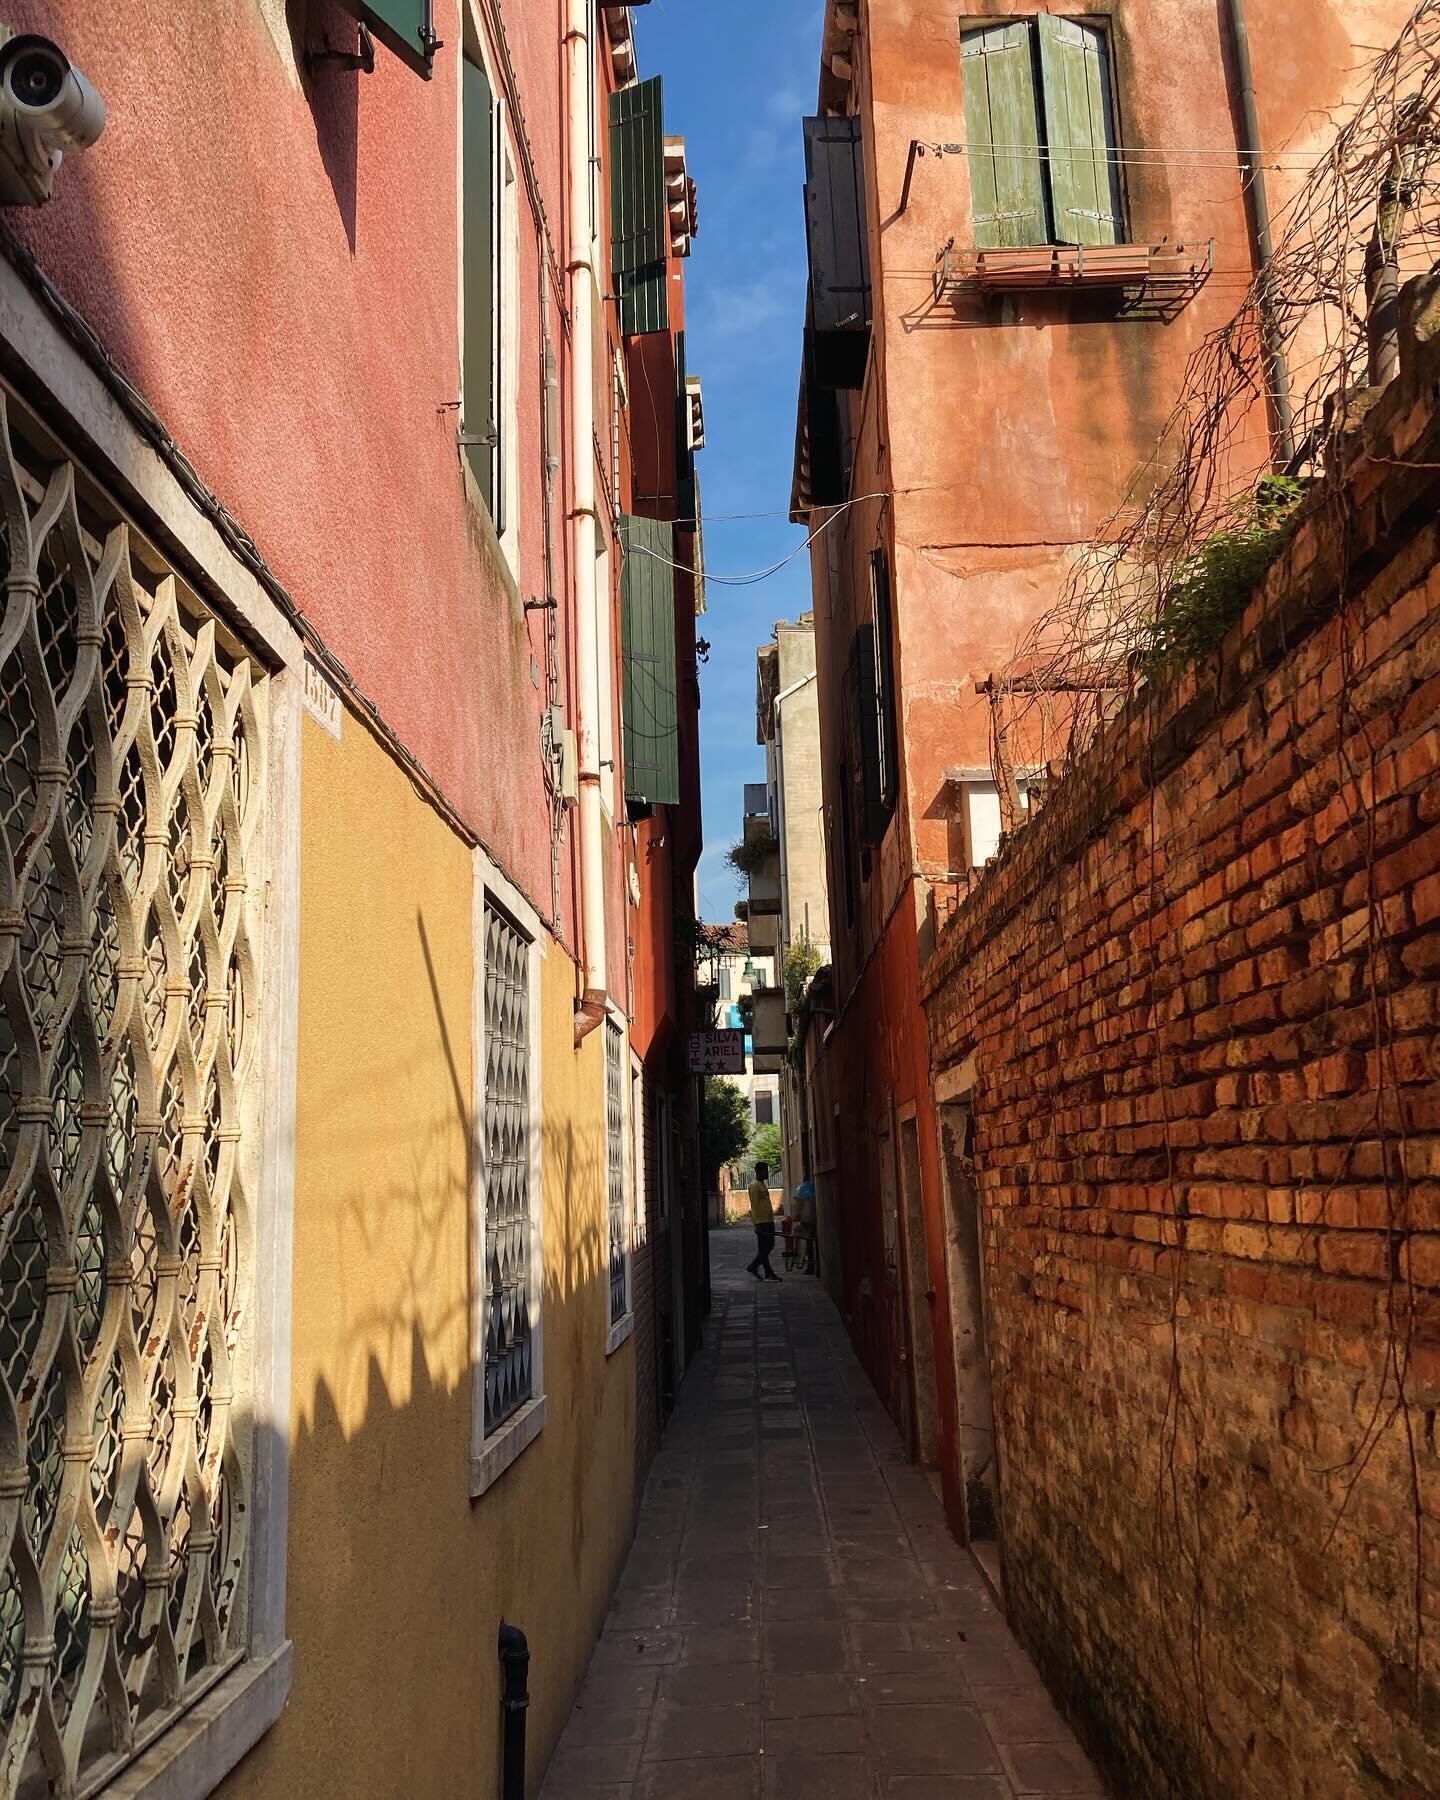 Aurinkoiset terveiset Venetsiasta ☀️

Ty&ouml;tila vaihtui viikoksi n&auml;ille kujille ja takatalvi aurinkoon. Emma ty&ouml;skentelee t&auml;&auml;ll&auml; inspiroivan #creativeeurope projektin parissa, jota @taideakatemia Turussa luotsaa. Professio